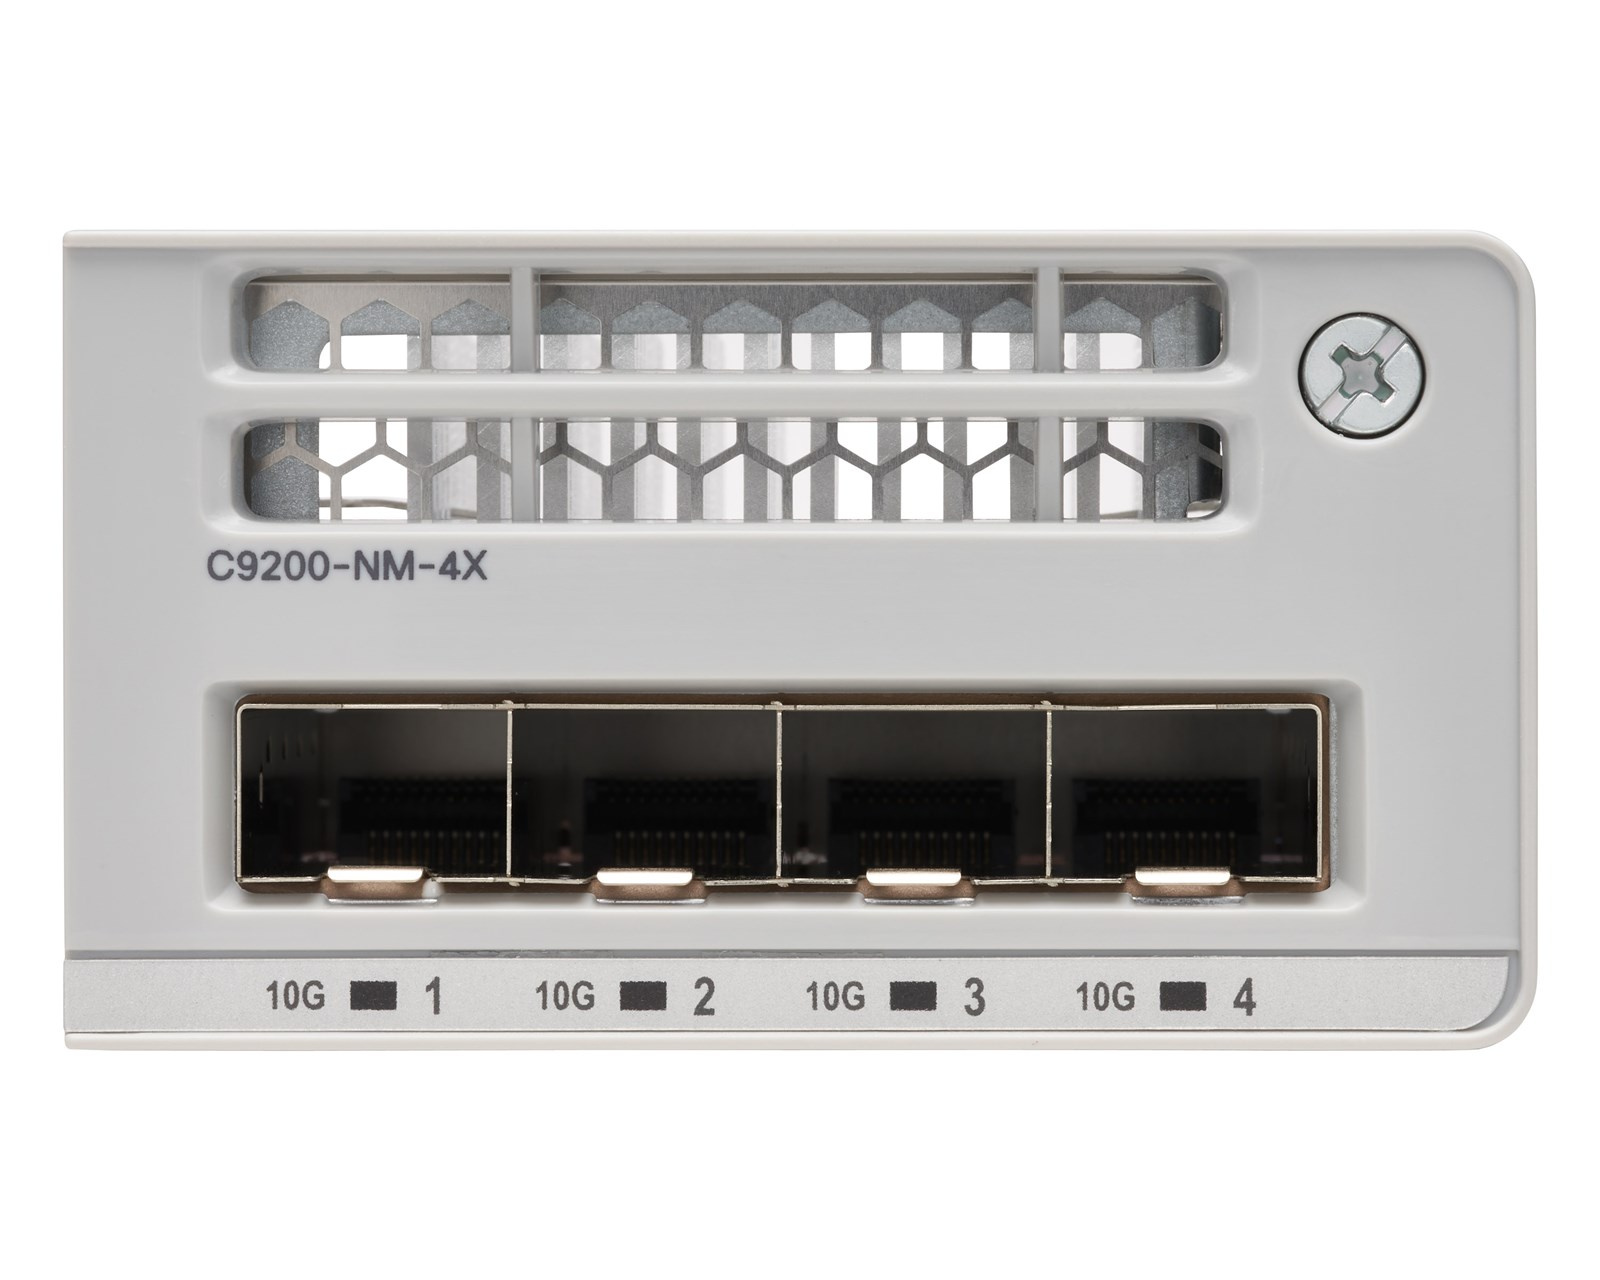 Cisco Catalyst C9200-NM-4X